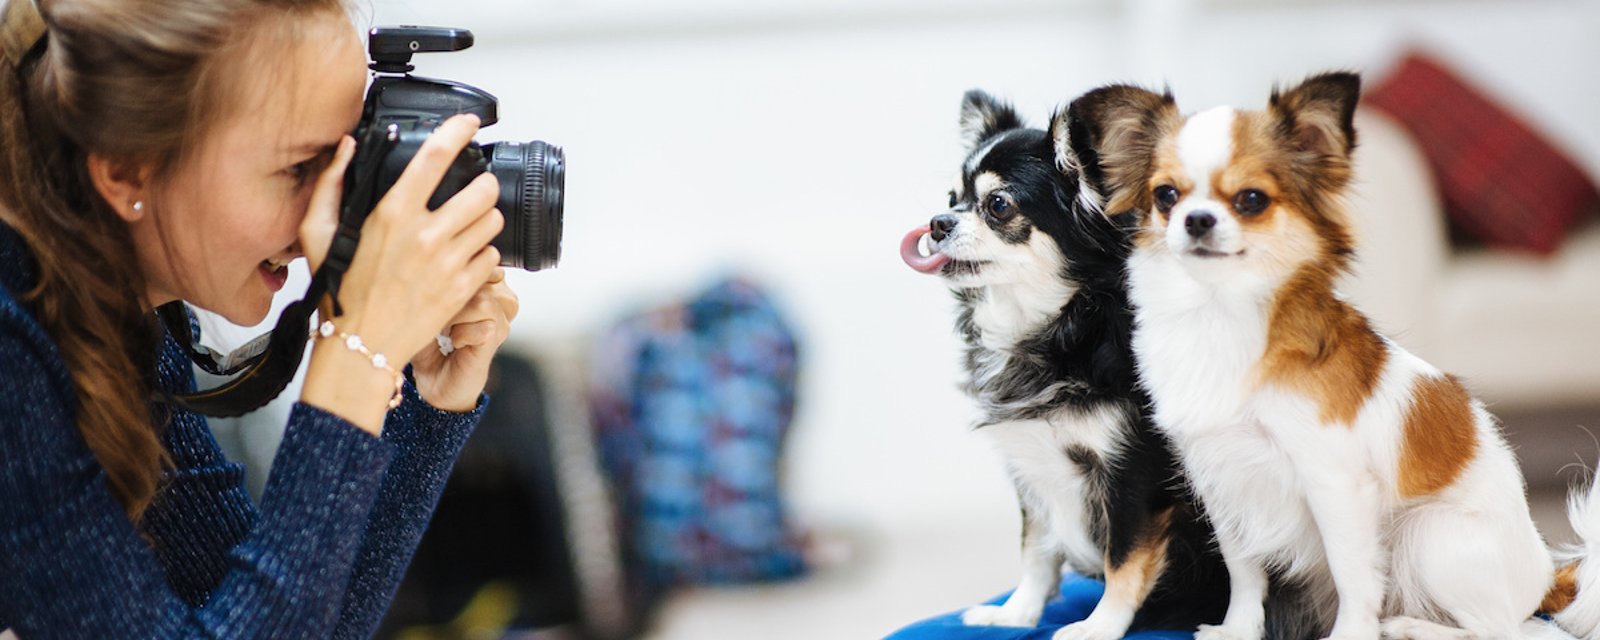 Une nouvelle étude nous apprend que les propriétaires de chiens prennent plus de photos de leur animal que de leur conjoint.